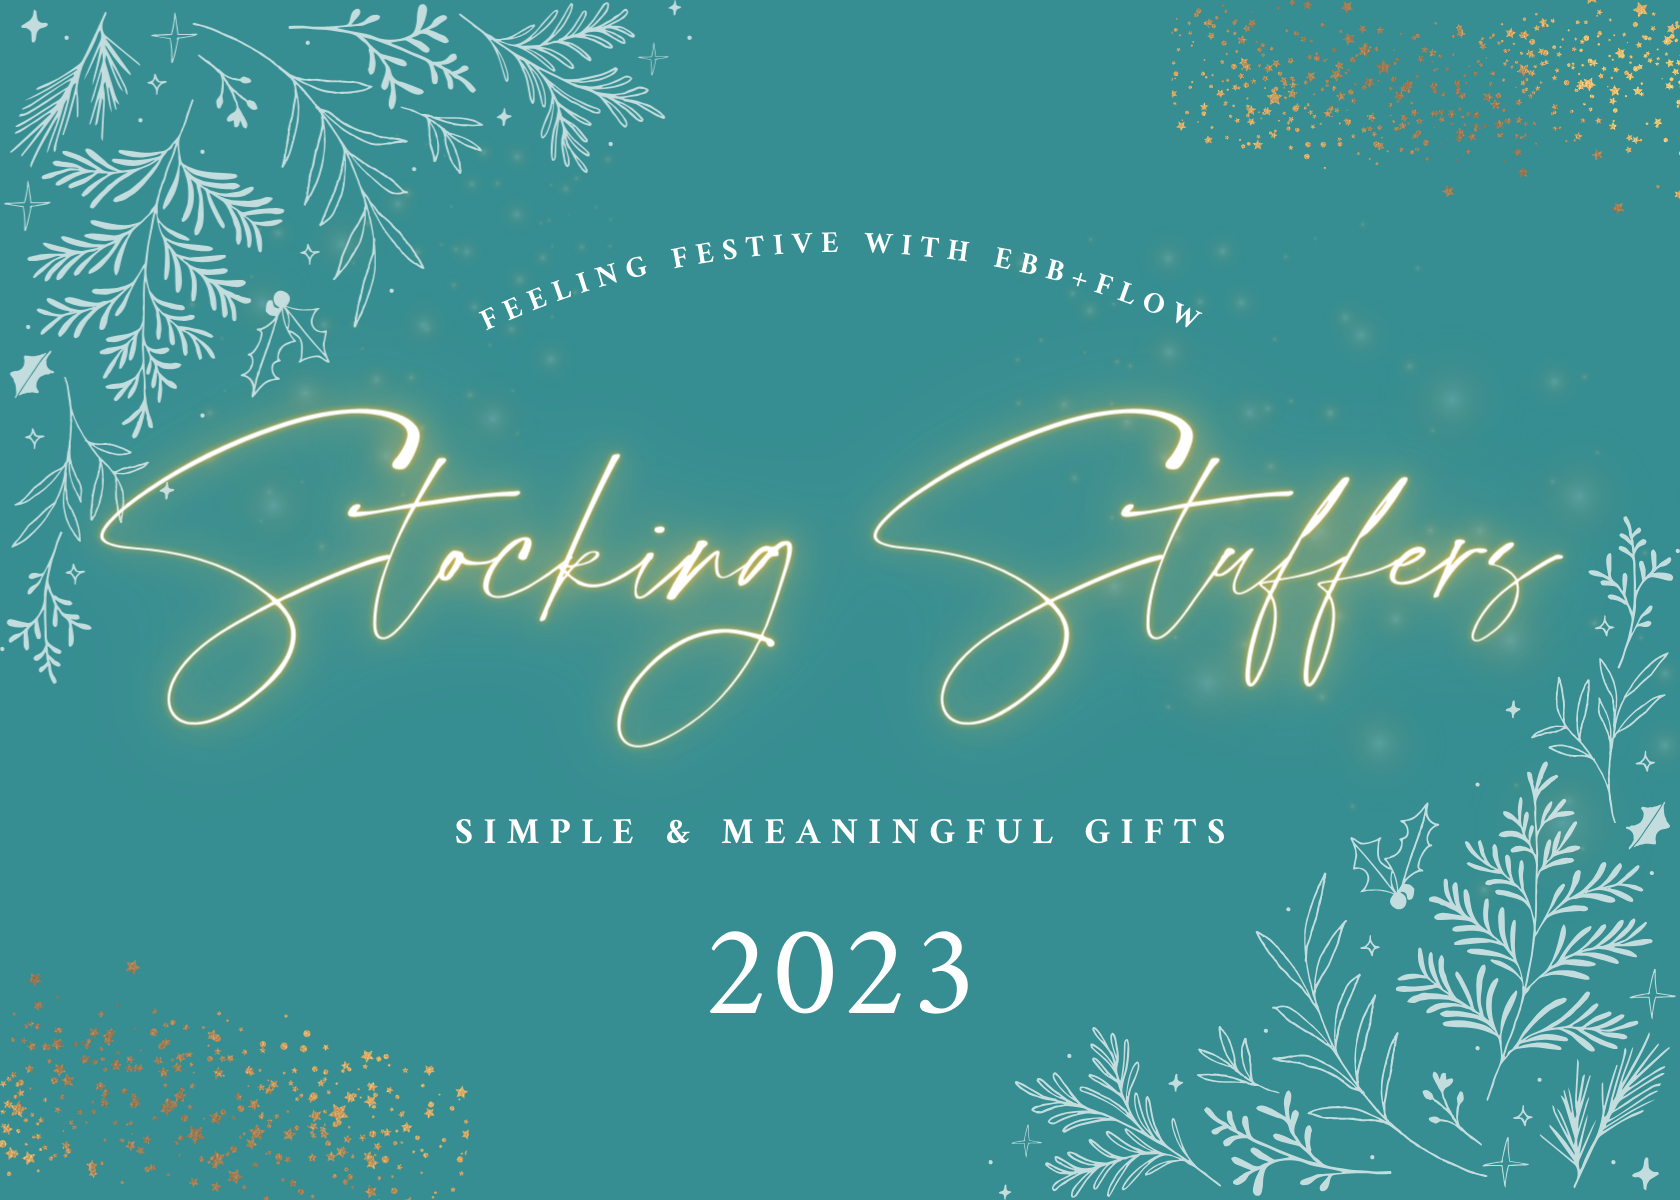 2023 Stocking Stuffers